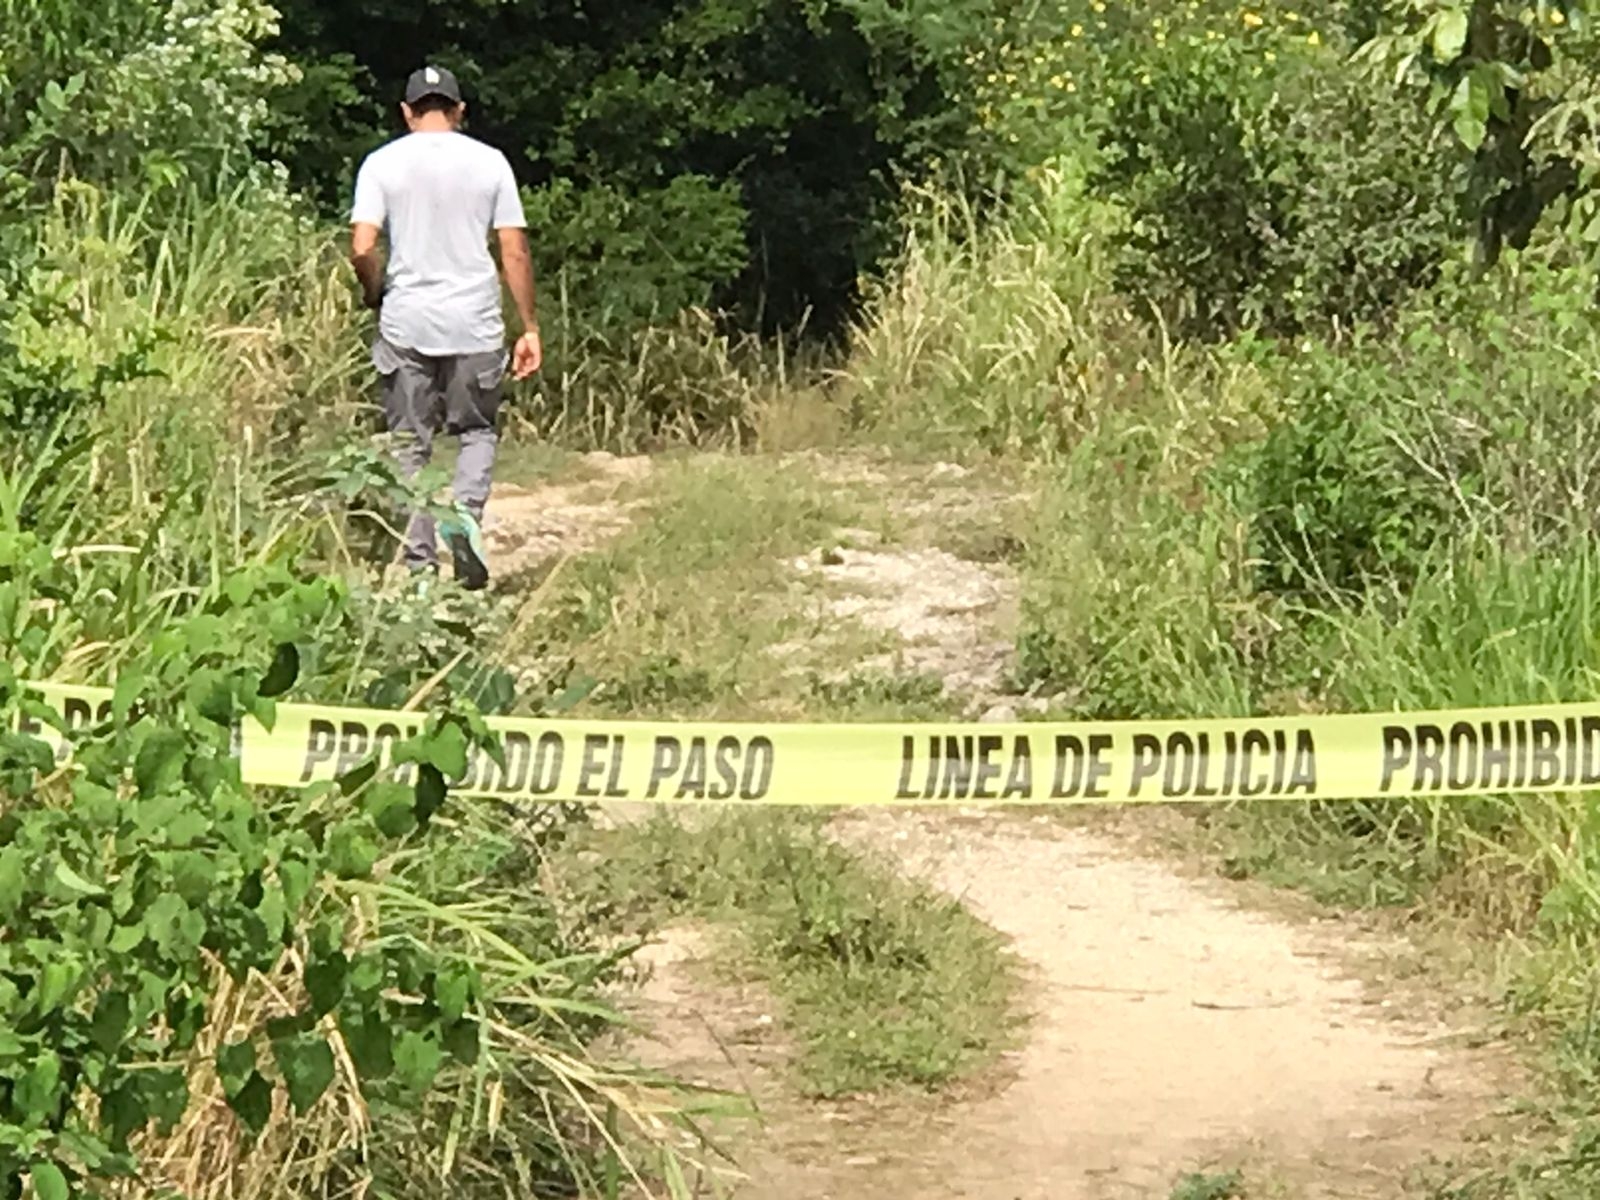 Menor de edad baleado en Tulum, aún sin identificar: FGE de Quintana Roo